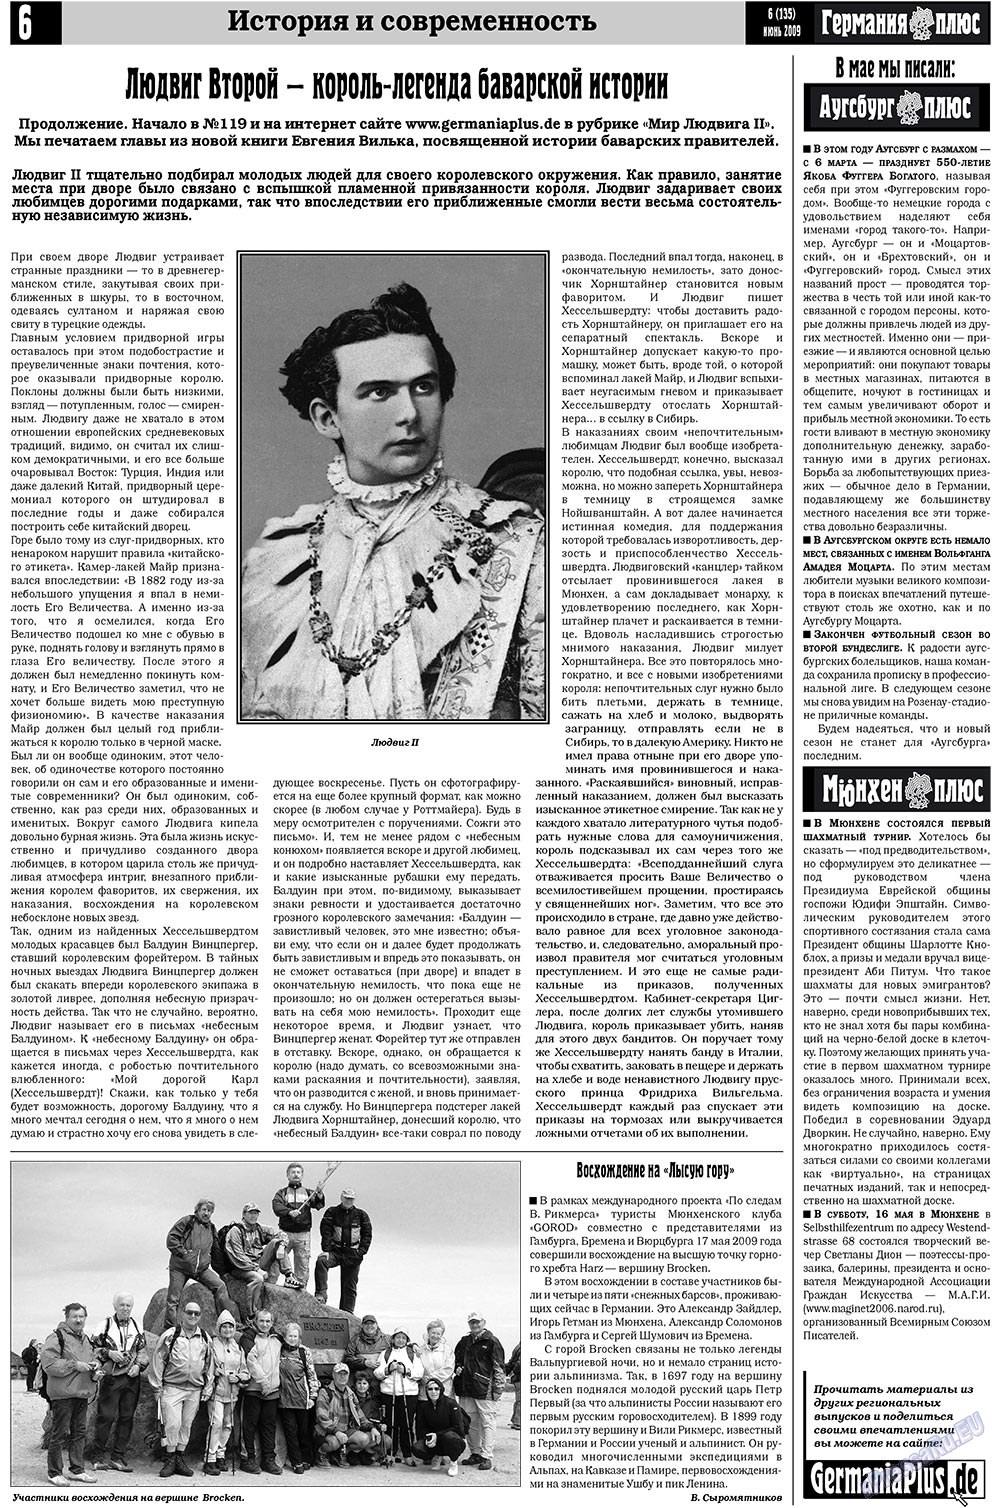 Германия плюс (газета). 2009 год, номер 6, стр. 6